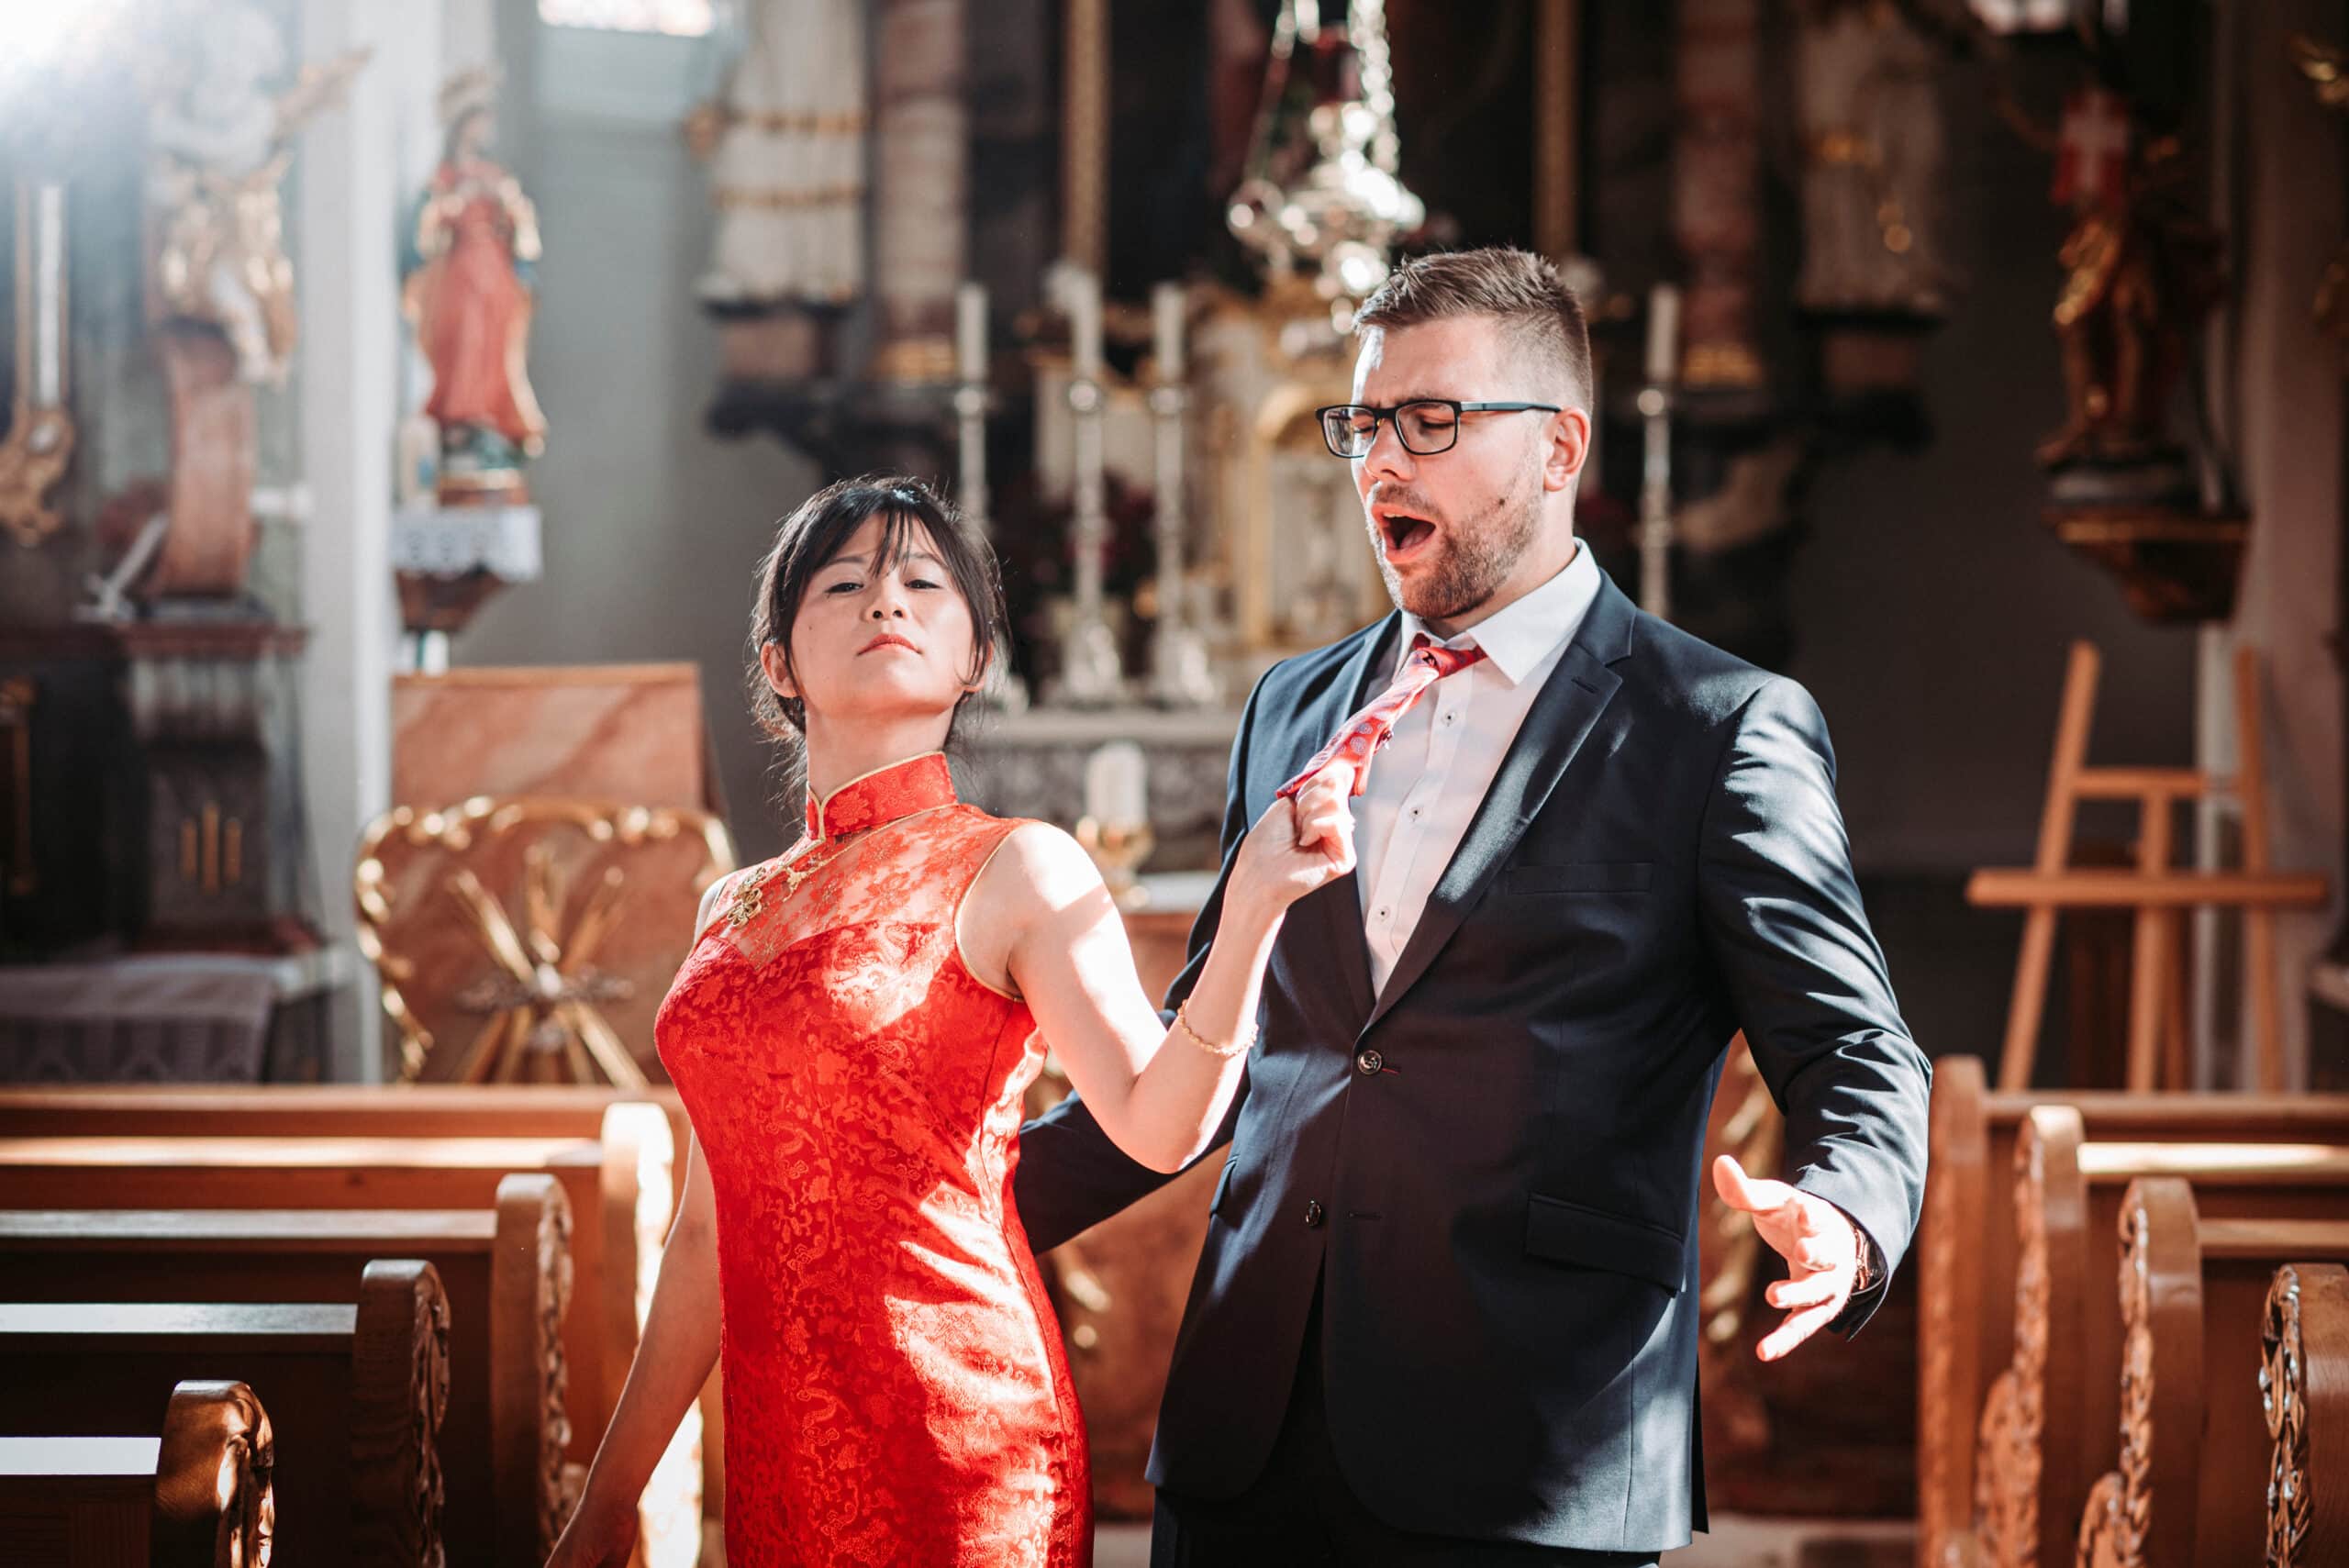 Die Braut zieht ihren Bräutigam an der Krawatte in der Kirche Mariä Heimsuchung bei Aindling auf dem Spaß-Foto.